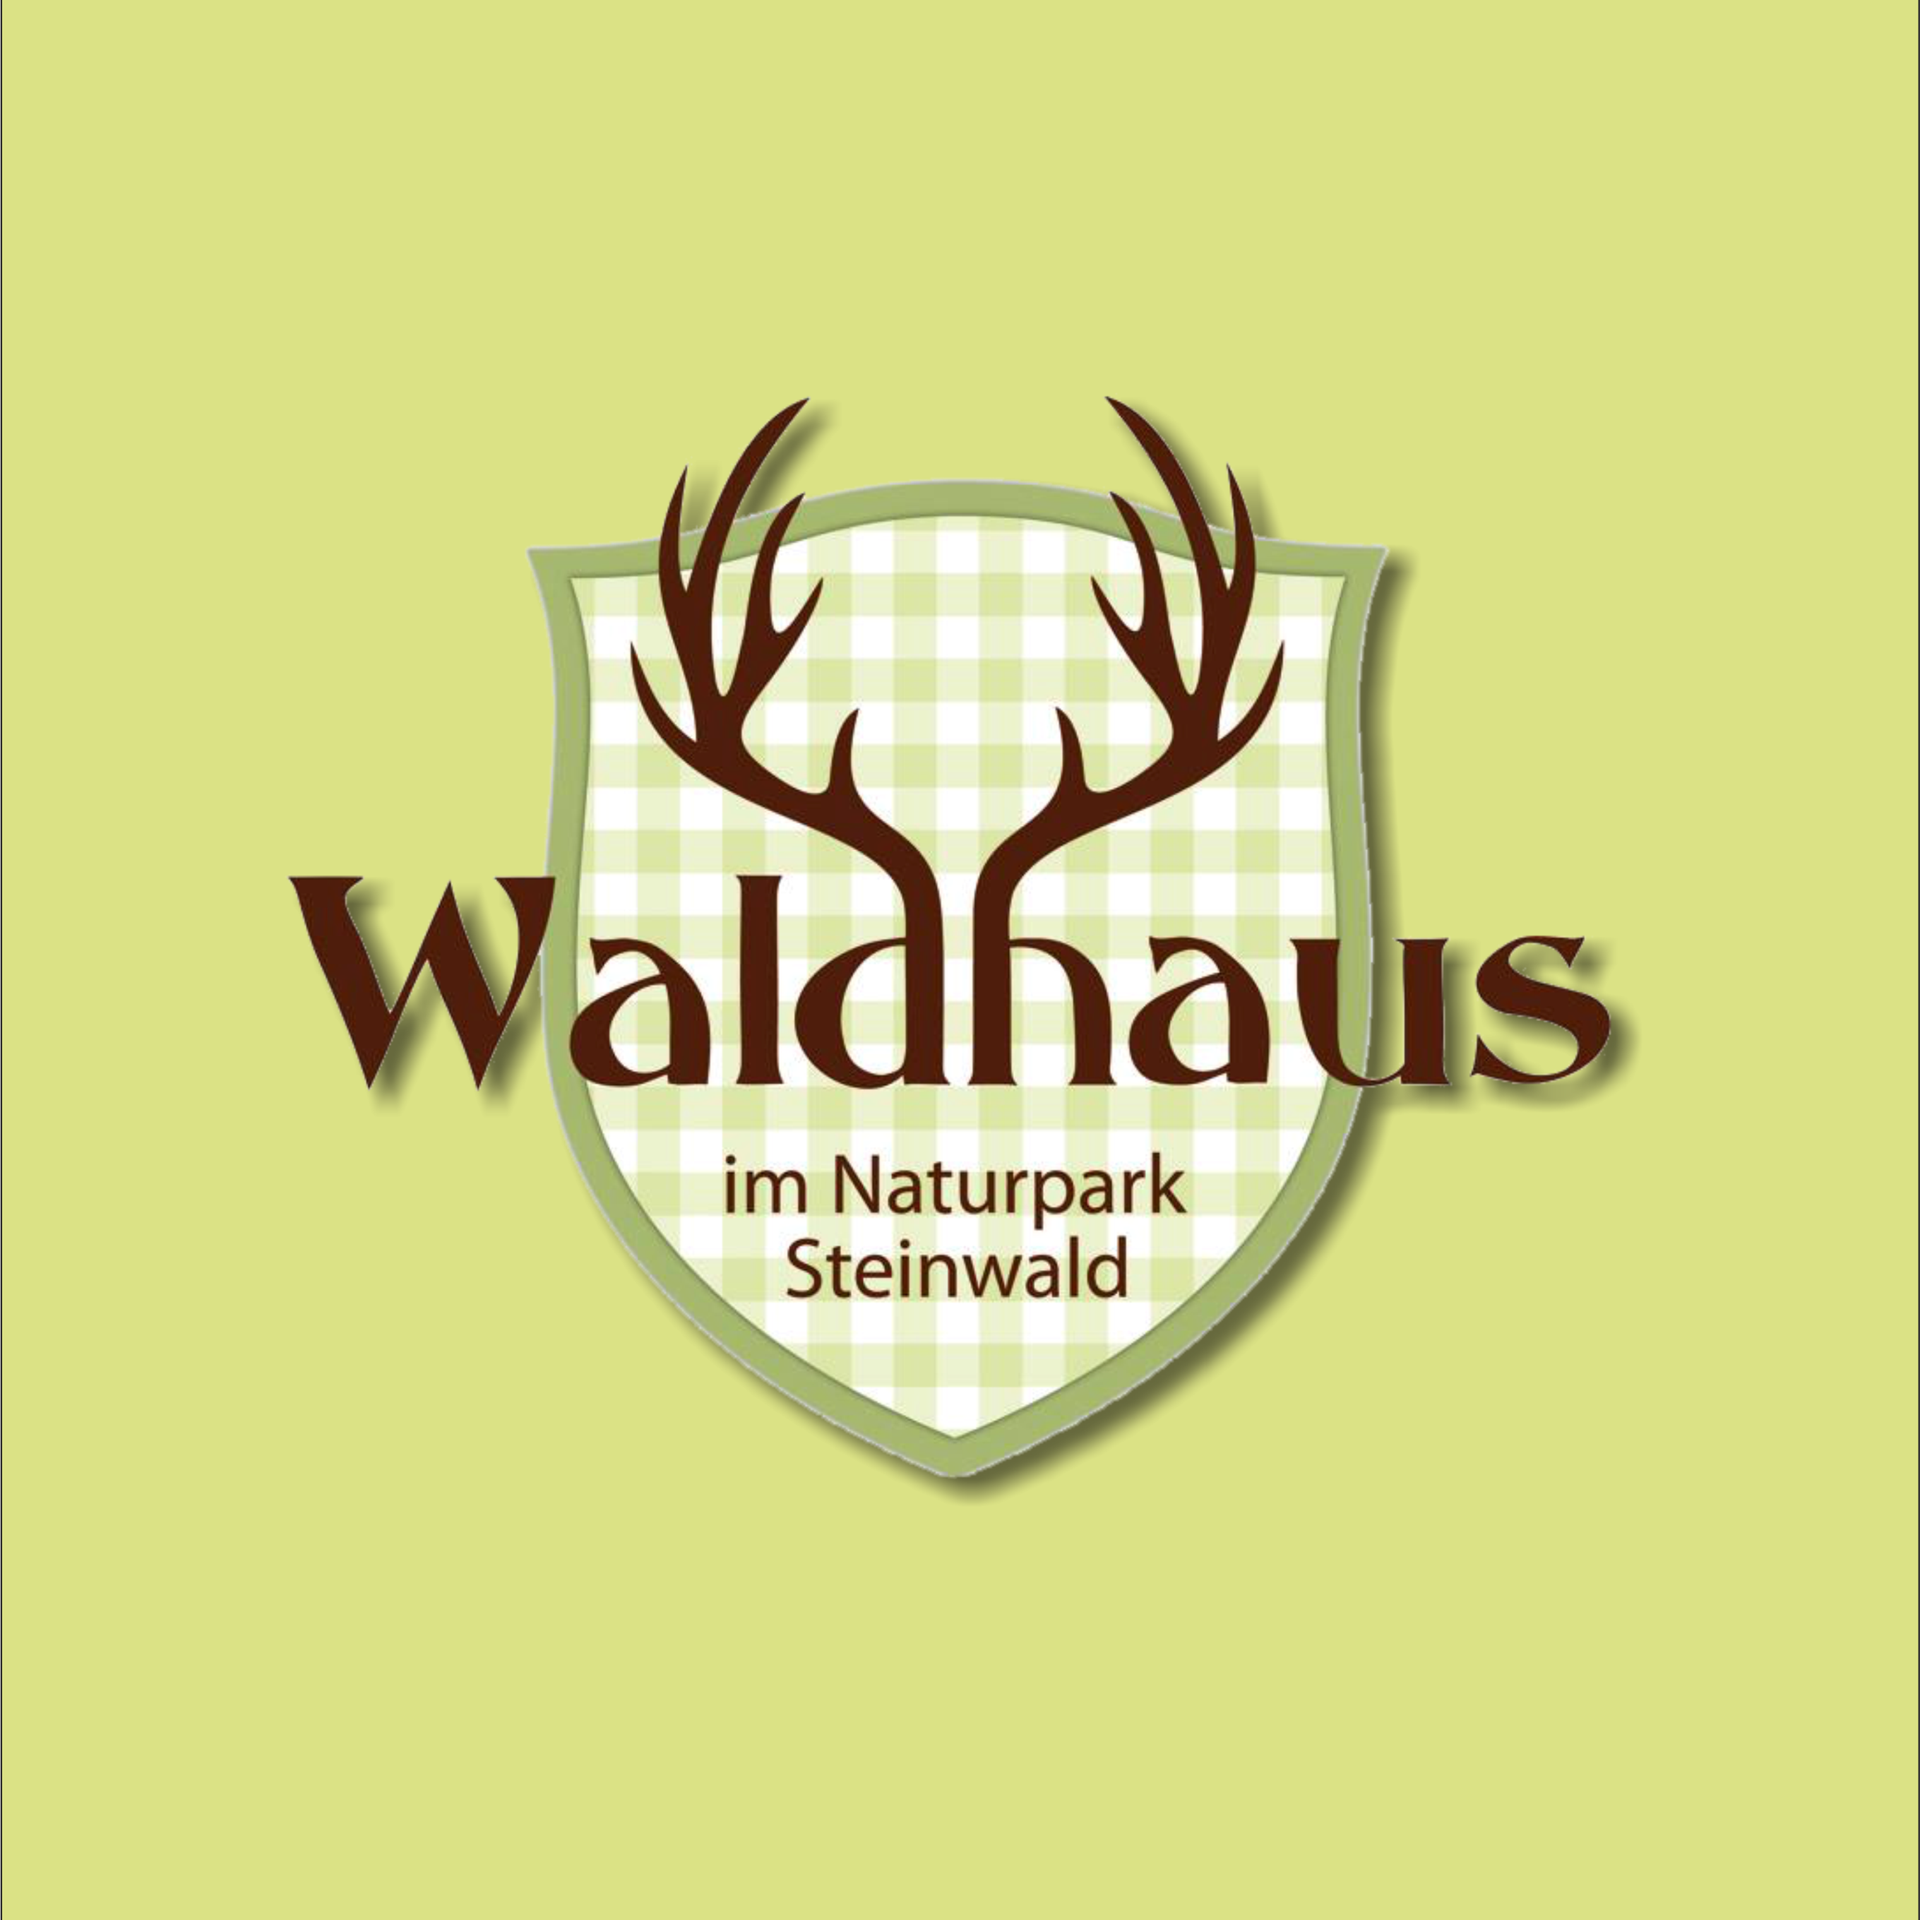 Waldhausfest, Naturpark Steinwald, Waldhaus im Steinwald, Waldhaus, Öko-Modellregion Steinwald, Steinwald-Allianz, Bio